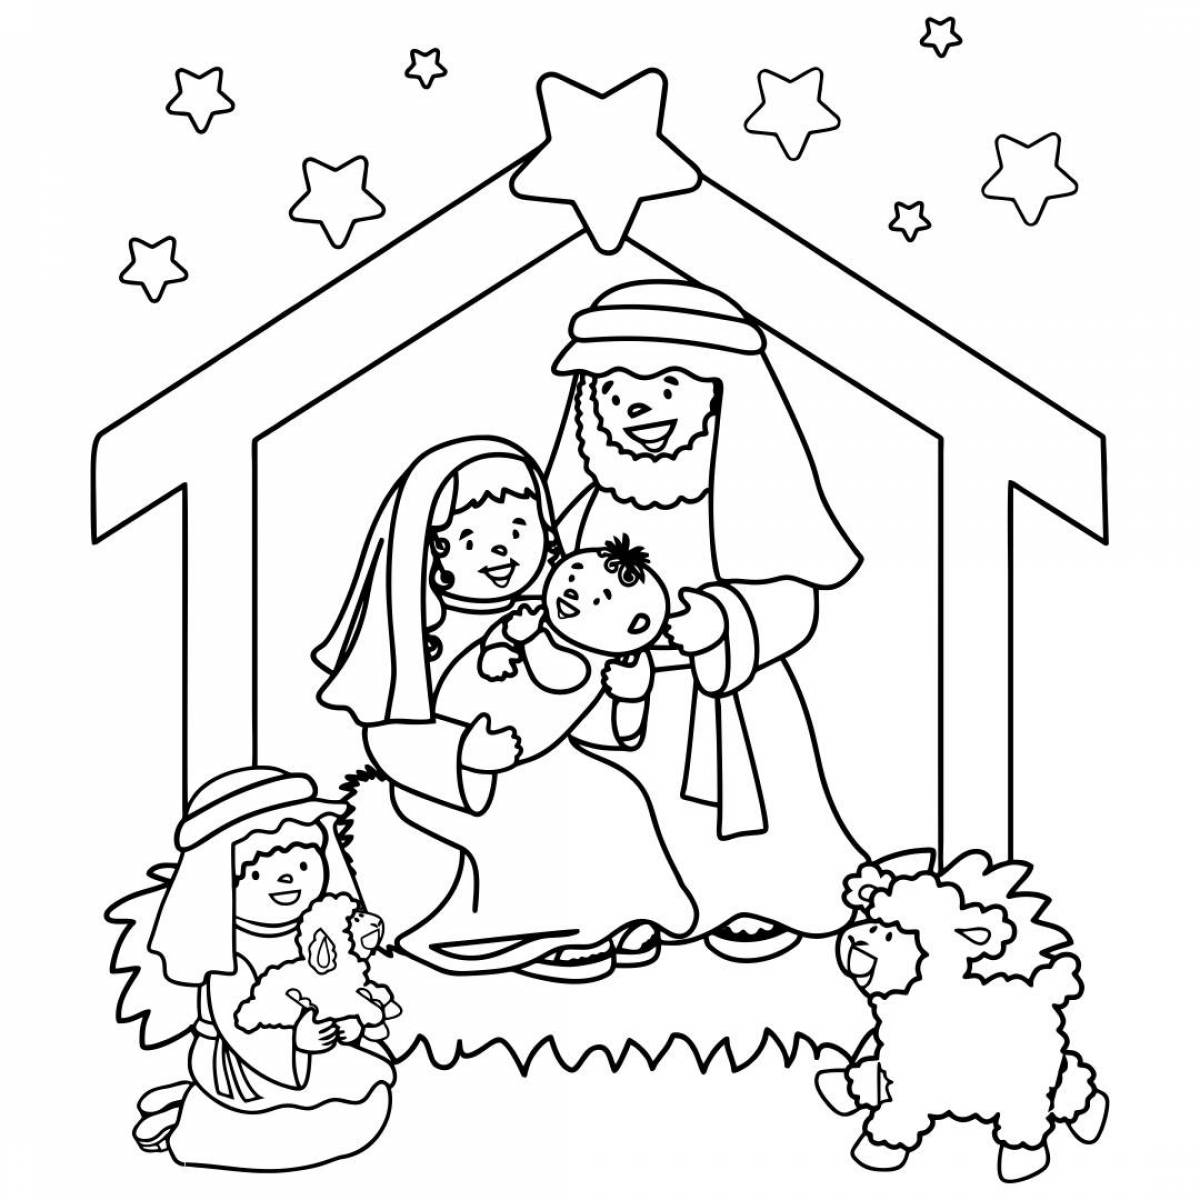 Brilliant coloring nativity scene